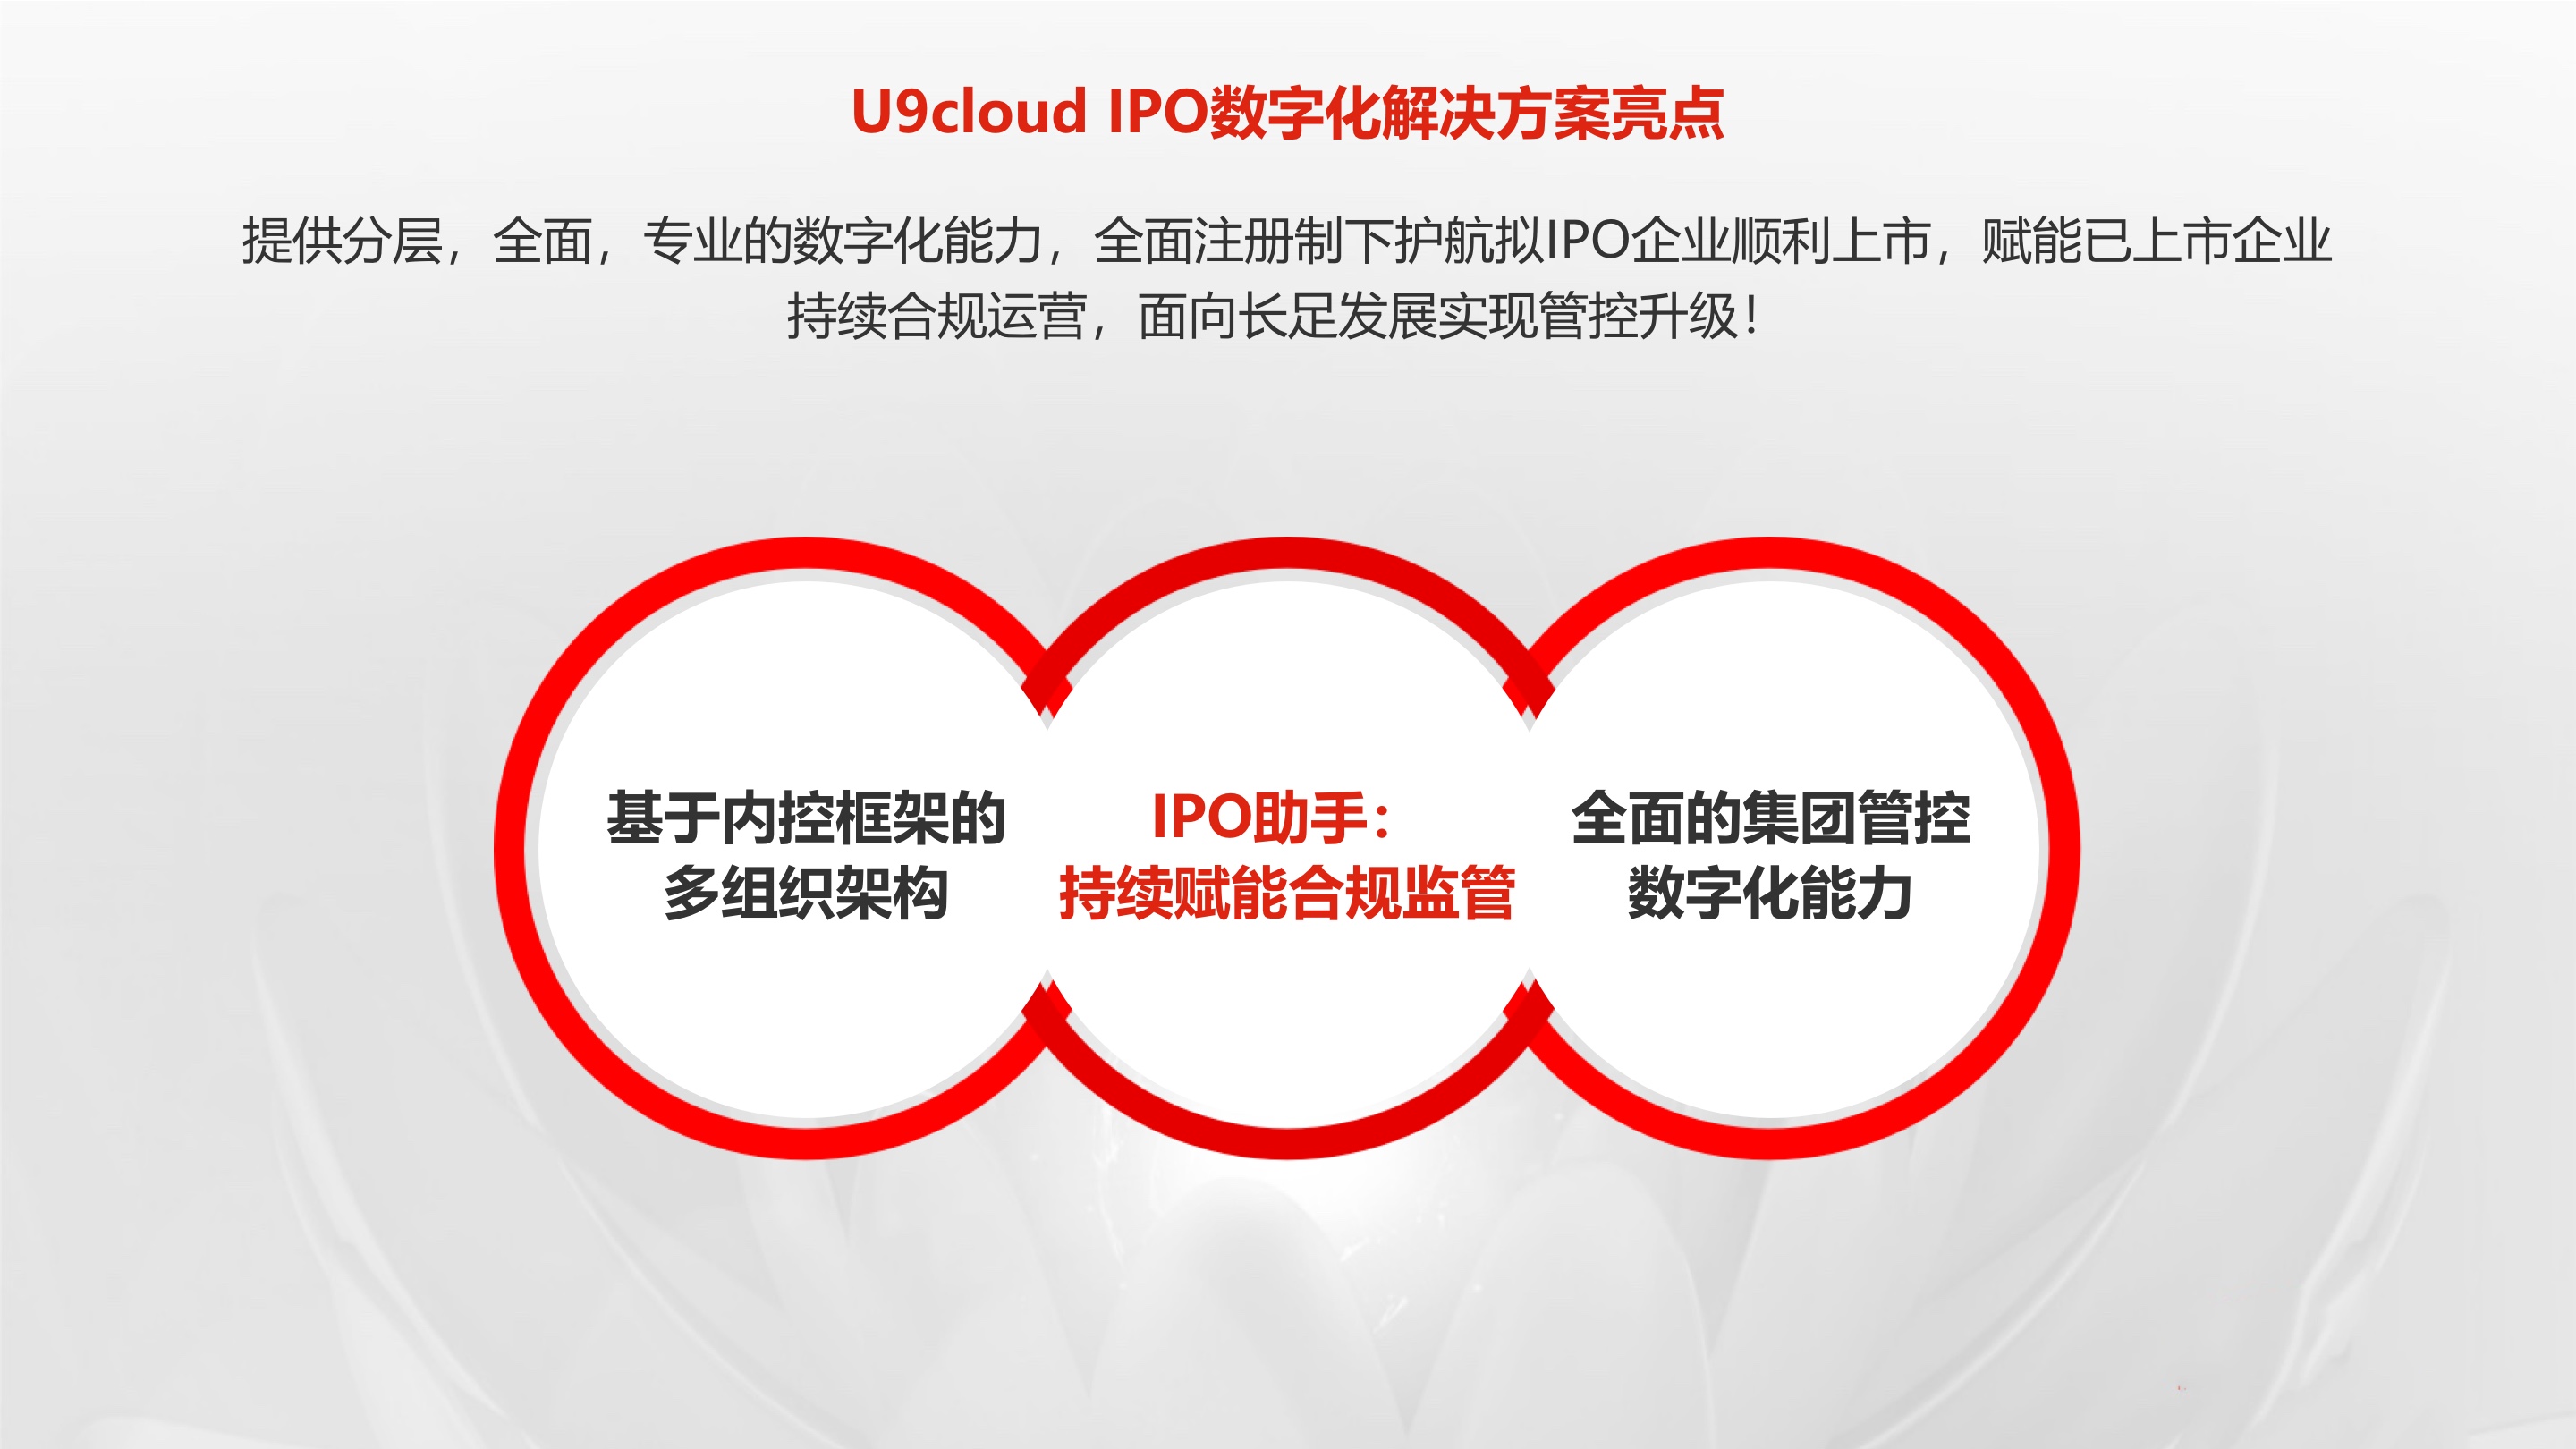 U9cloud IPO數字化解決方案亮點